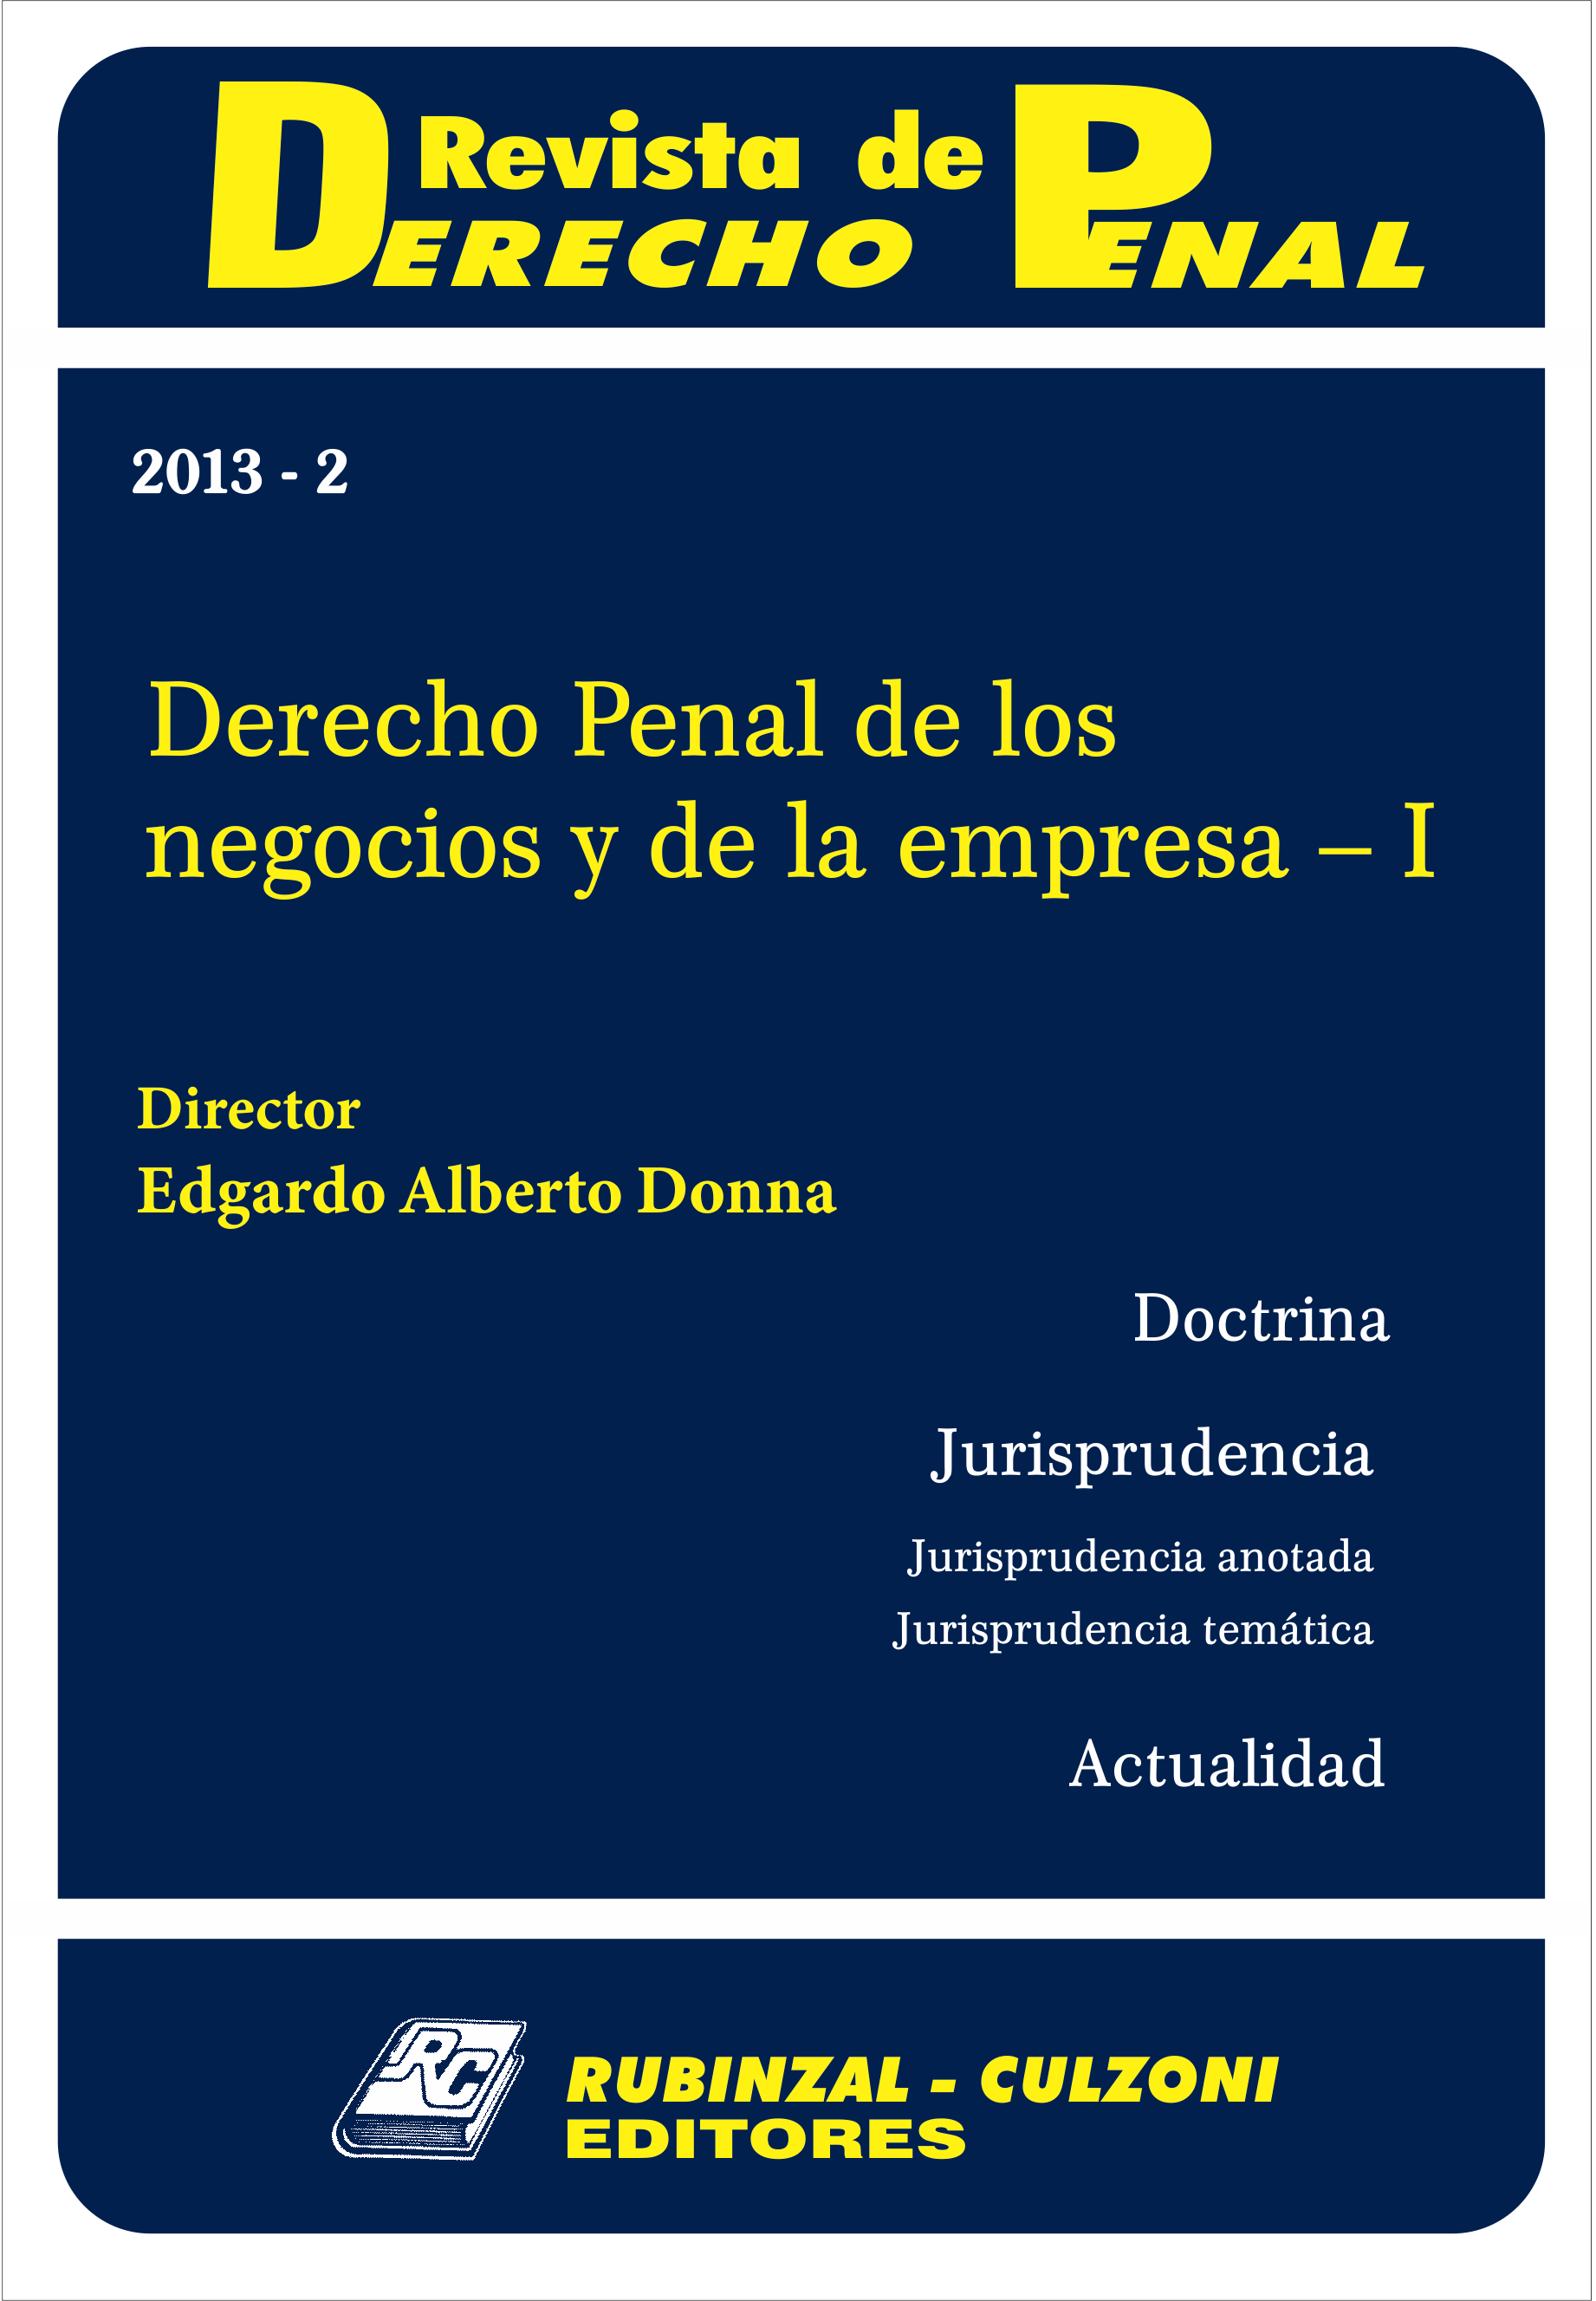 Revista de Derecho Penal - Derecho Penal de los negocios y de la empresa - I. [2013-2]